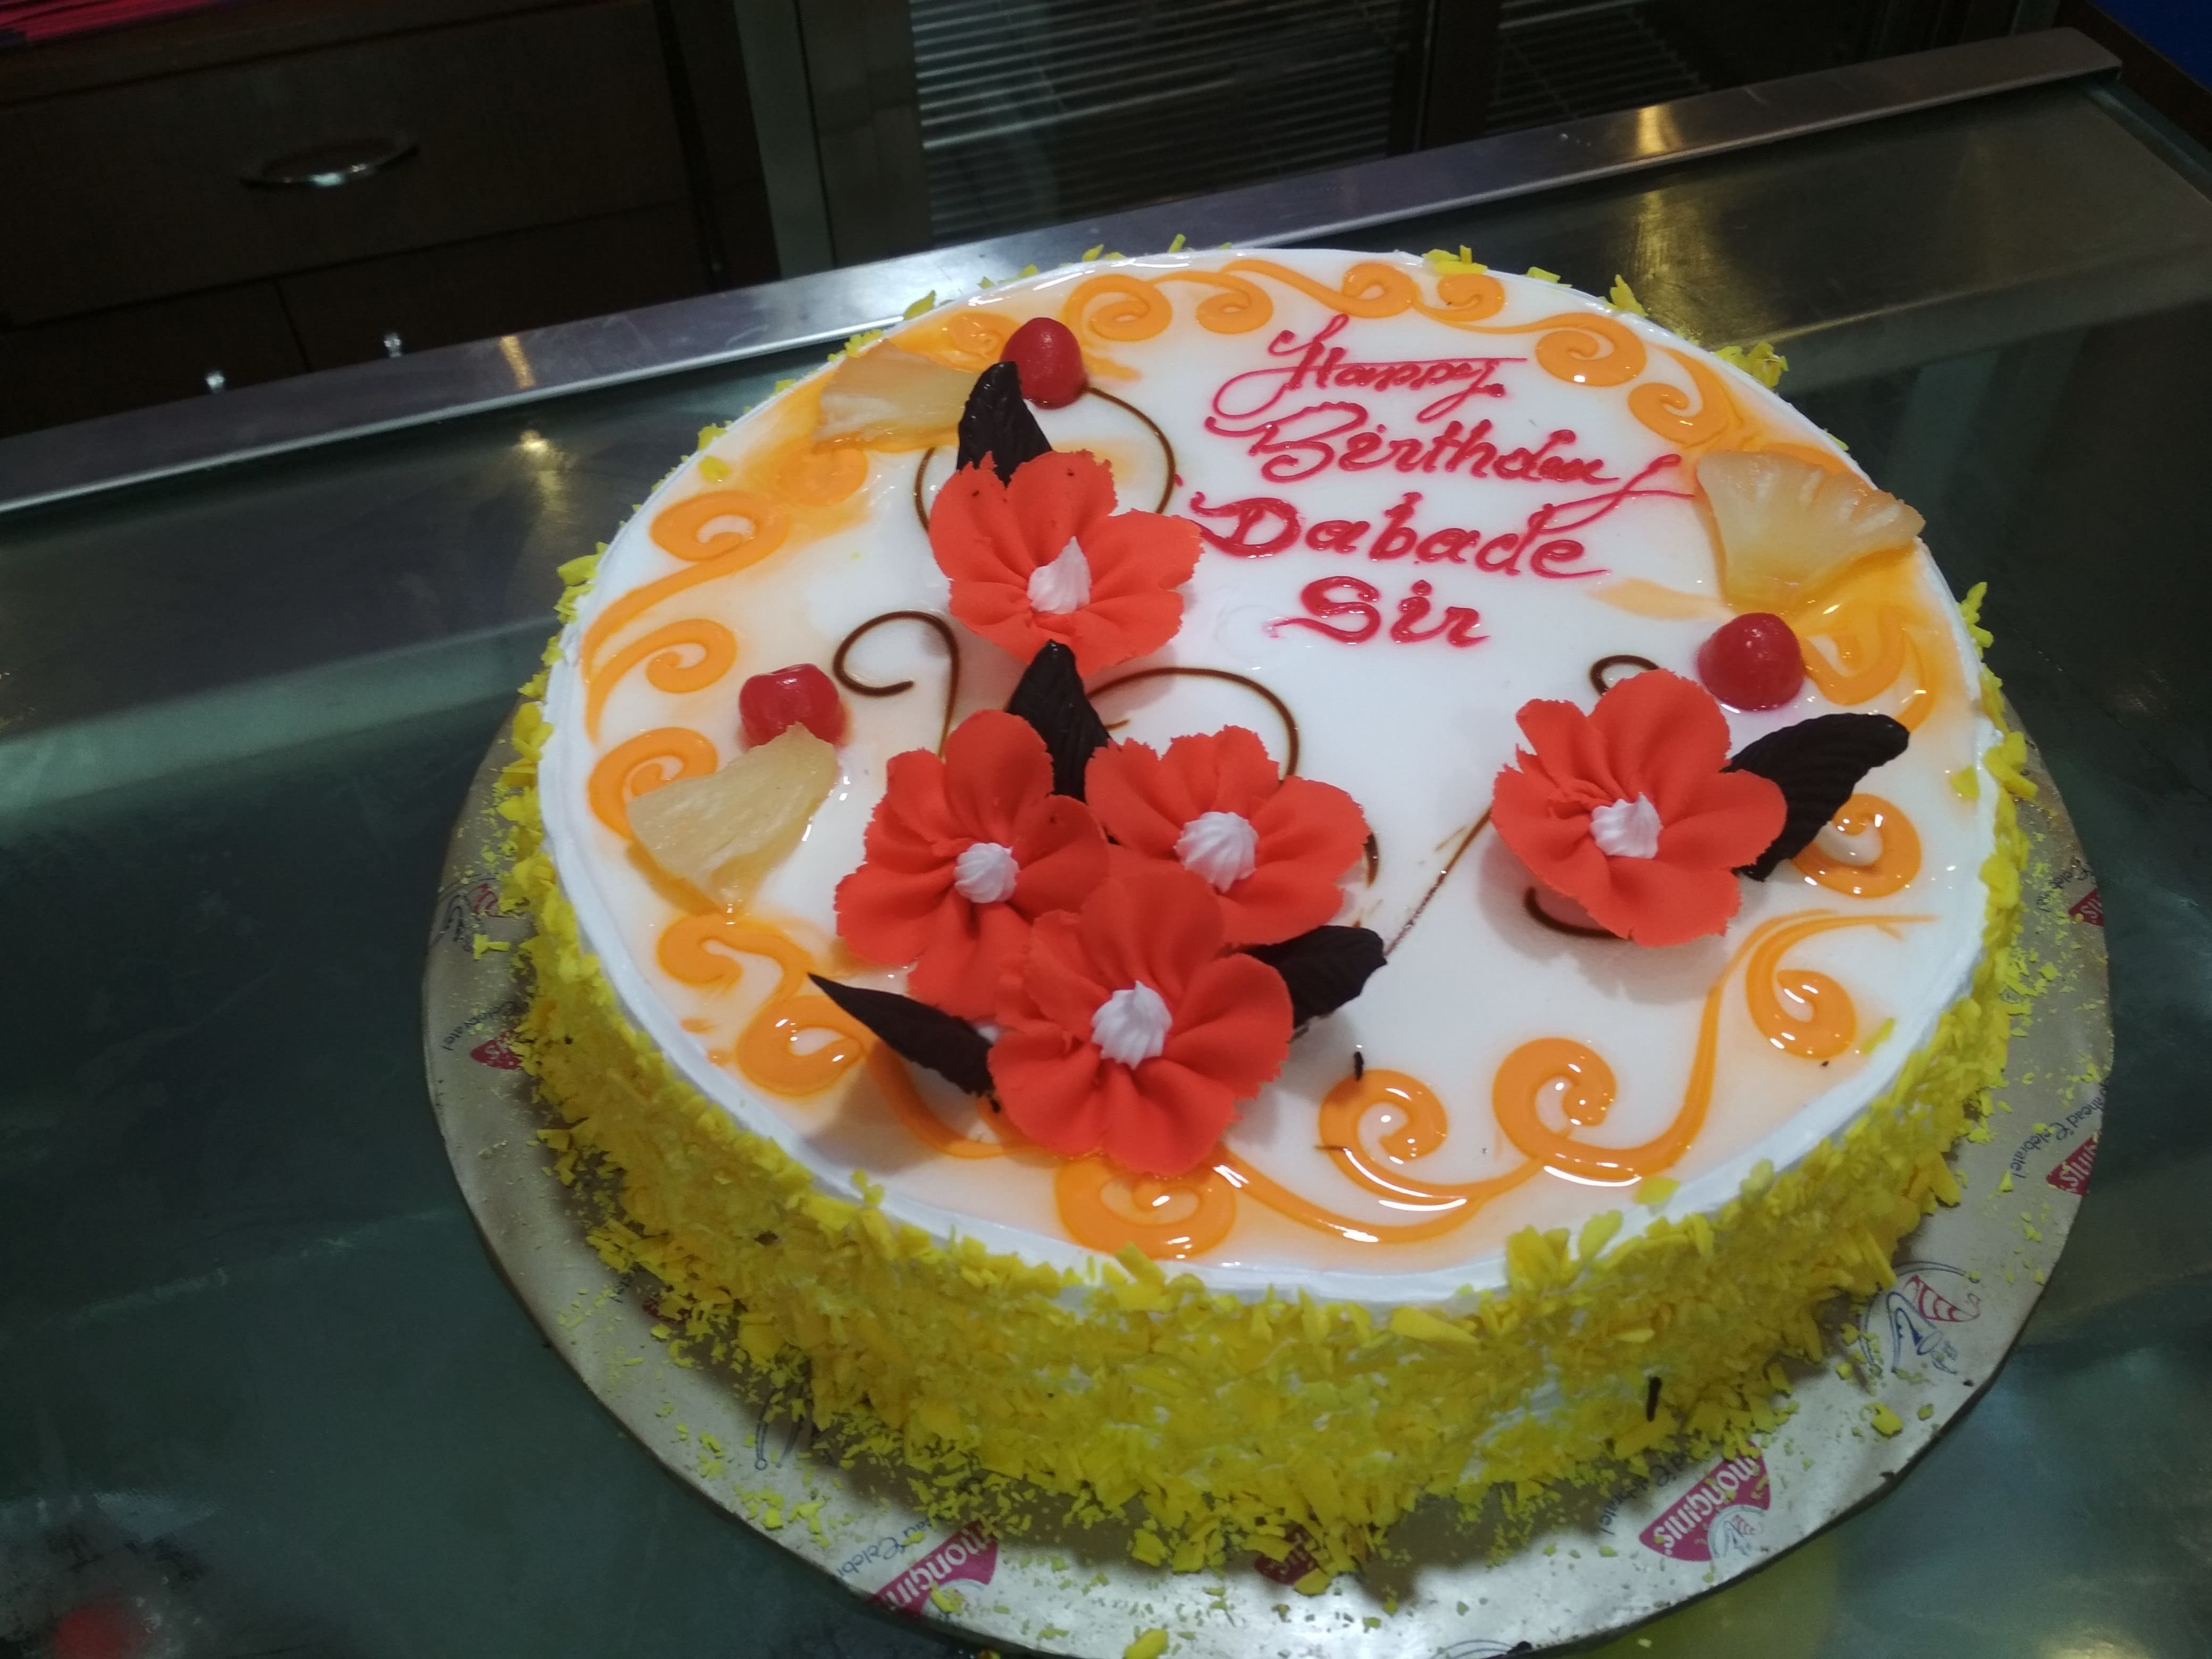 Monginis Cake Shop in Gadhinglaj,Kolhapur - Best Cake Shops in Kolhapur -  Justdial